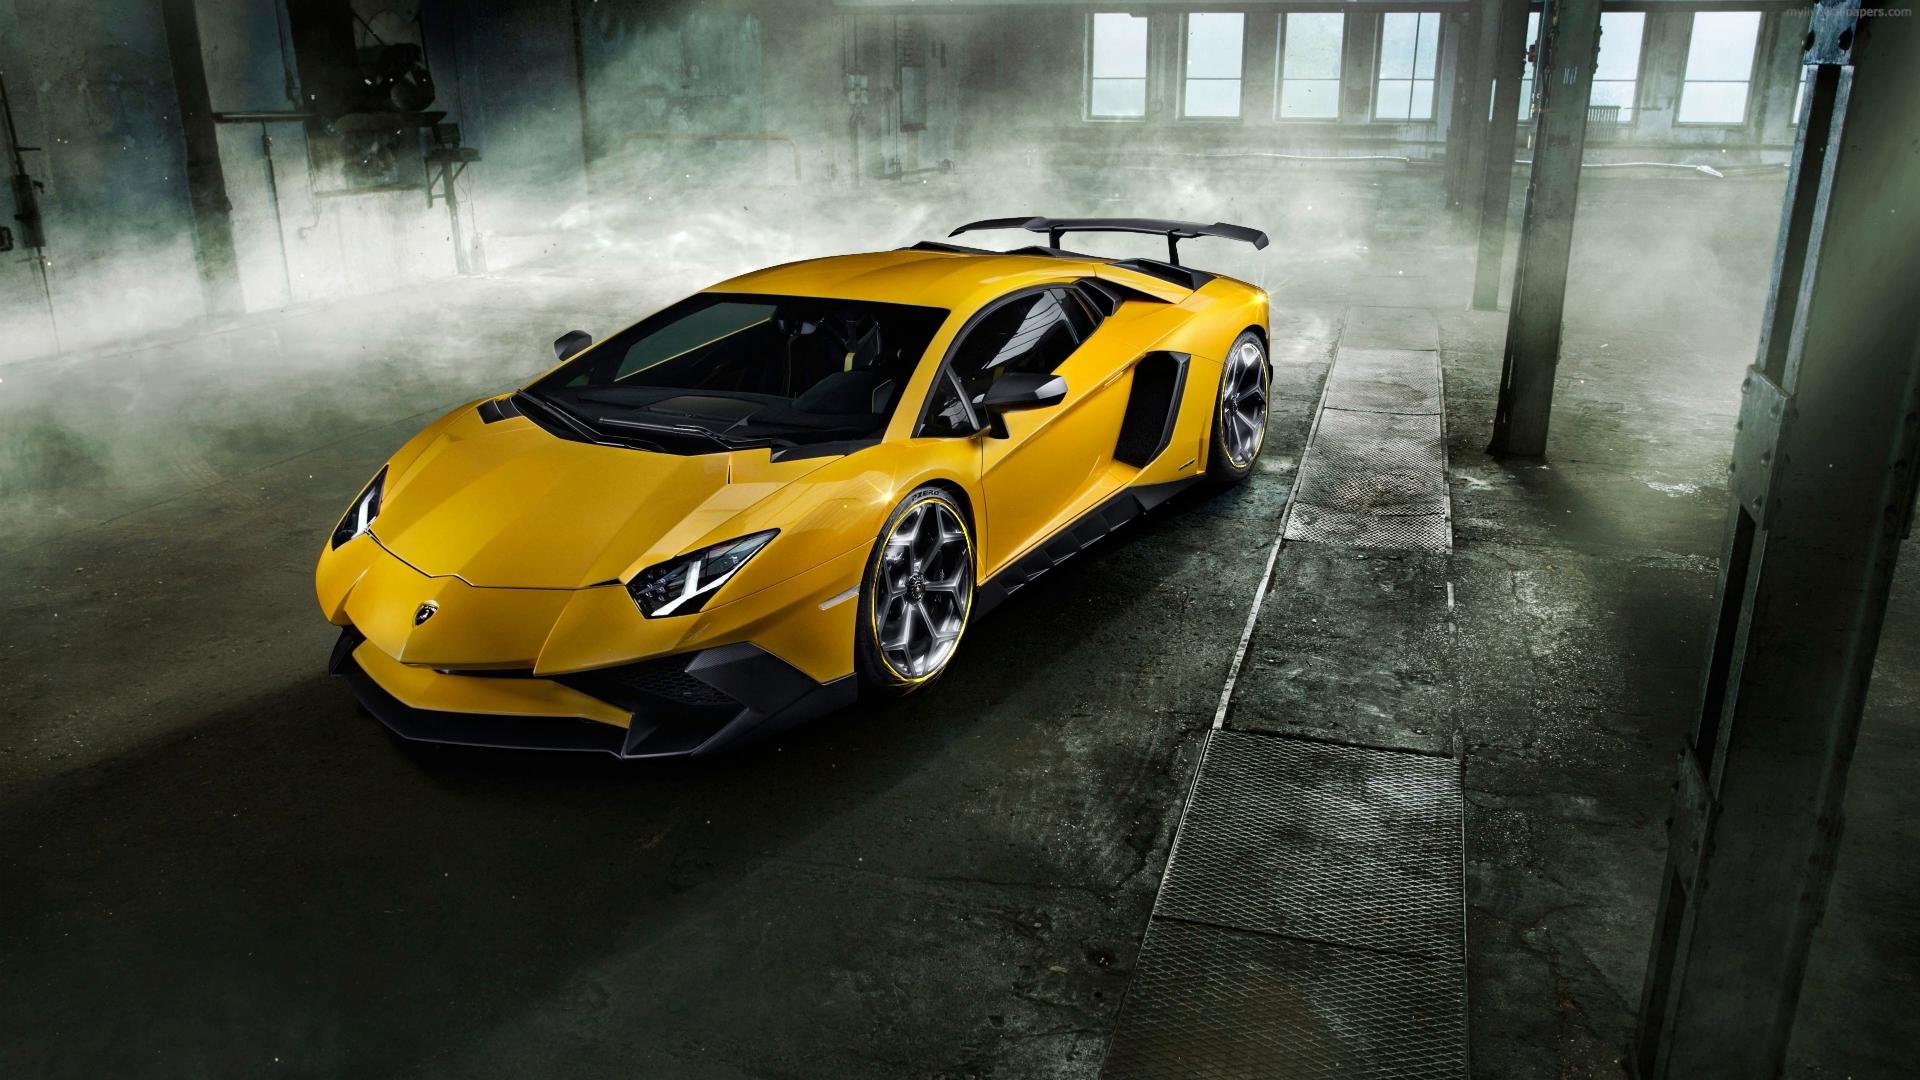 HD wallpaper: Lamborghini Gallardo LP560 4, yellow lamborghini gallardo |  Wallpaper Flare